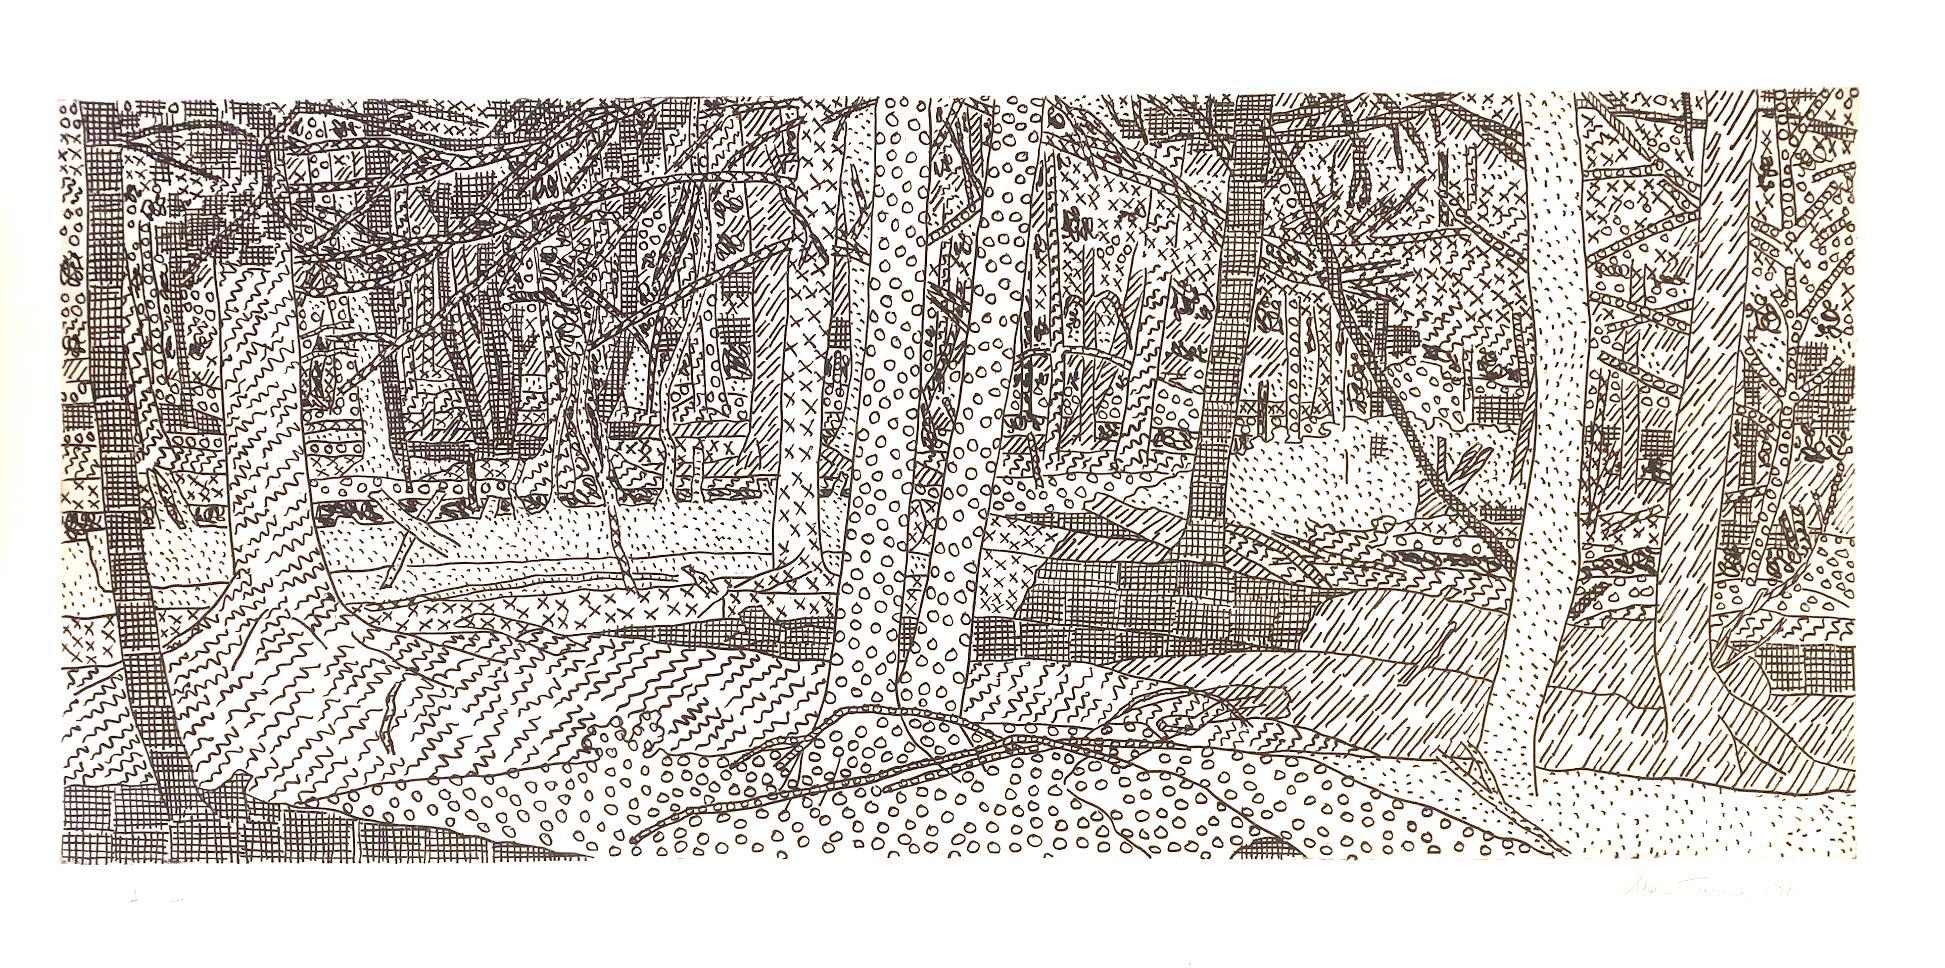 Waldszenerie – Print von Alan Turner